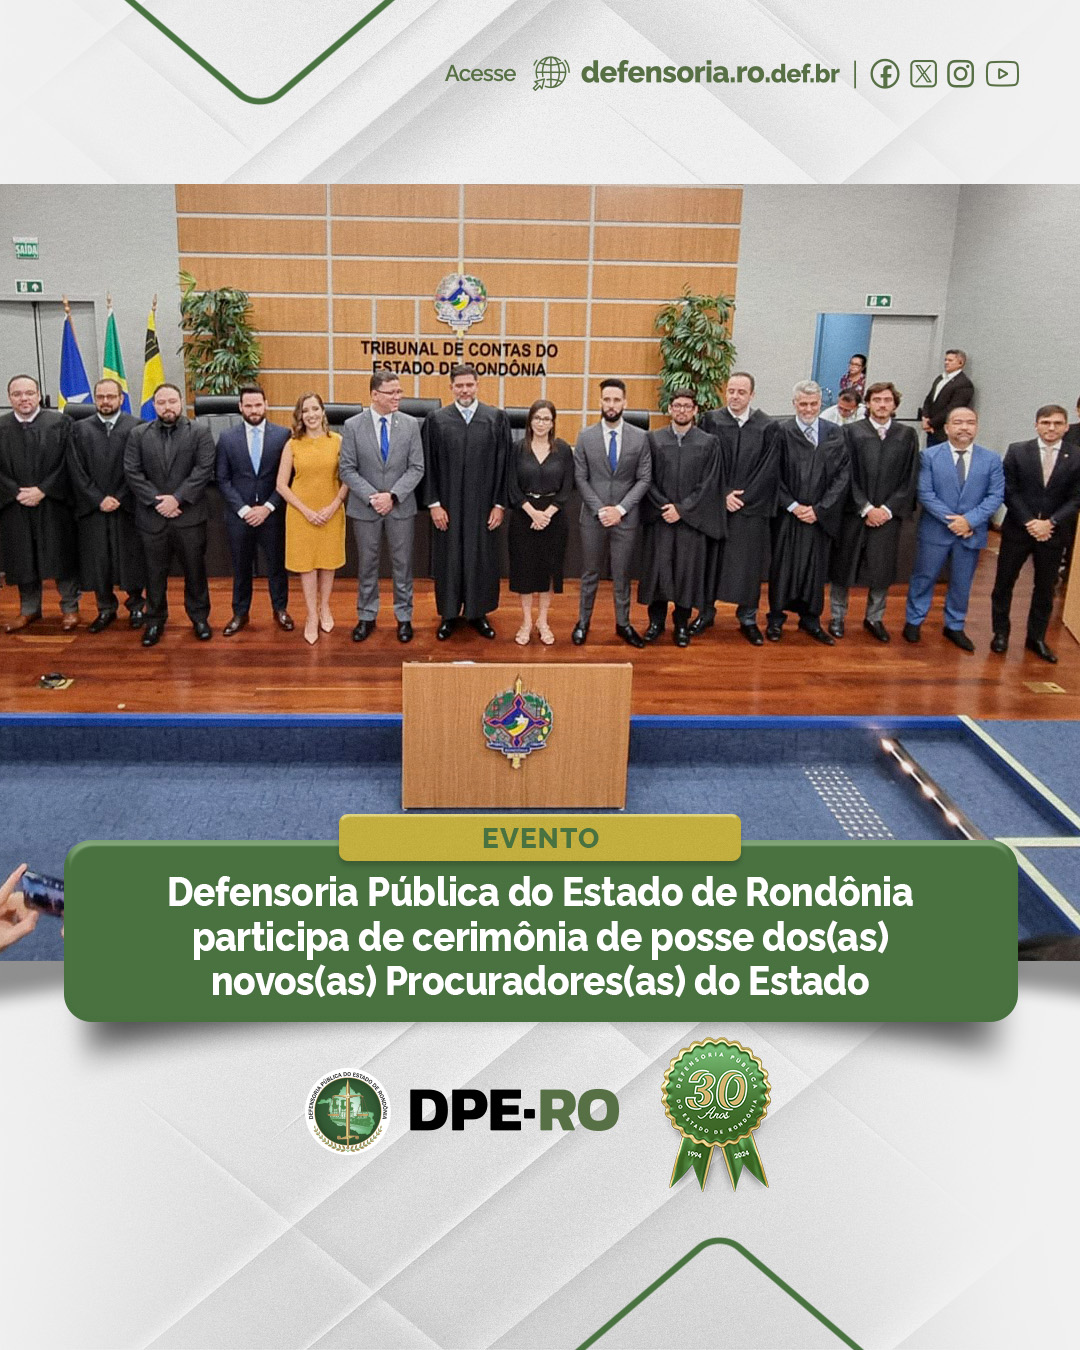 Defensoria Pública do Estado de Rondônia participa de cerimônia de posse dos(as) novos(as) Procuradores(as) do Estado